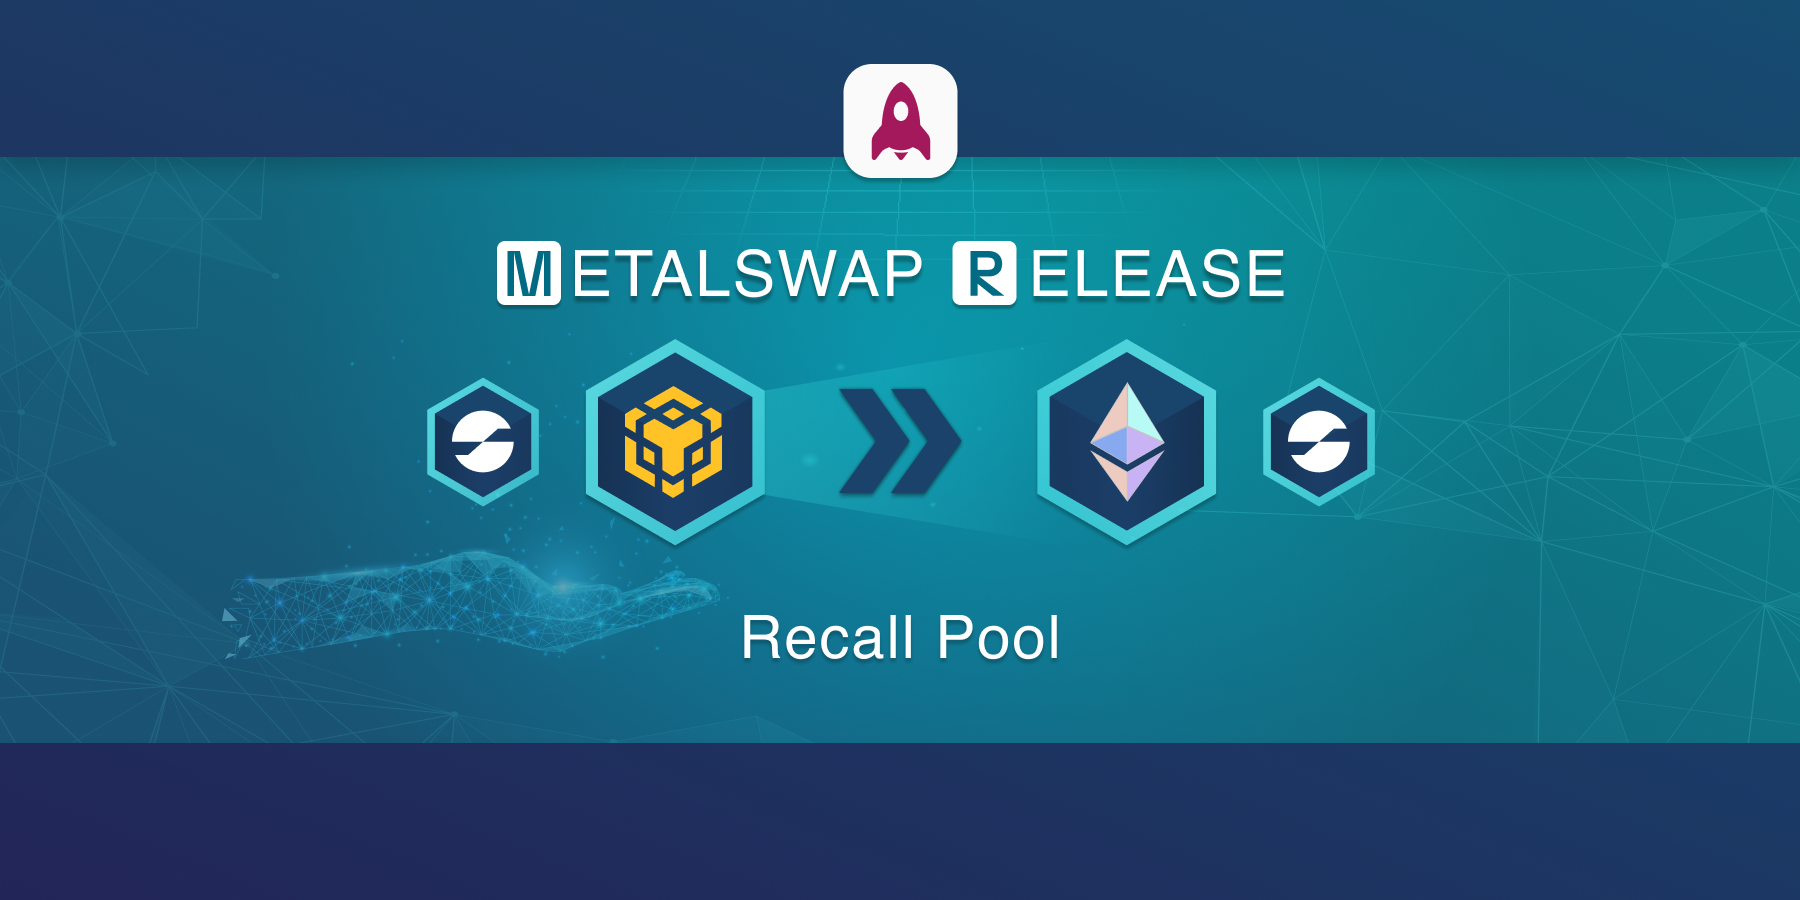 MetalSwap Release3